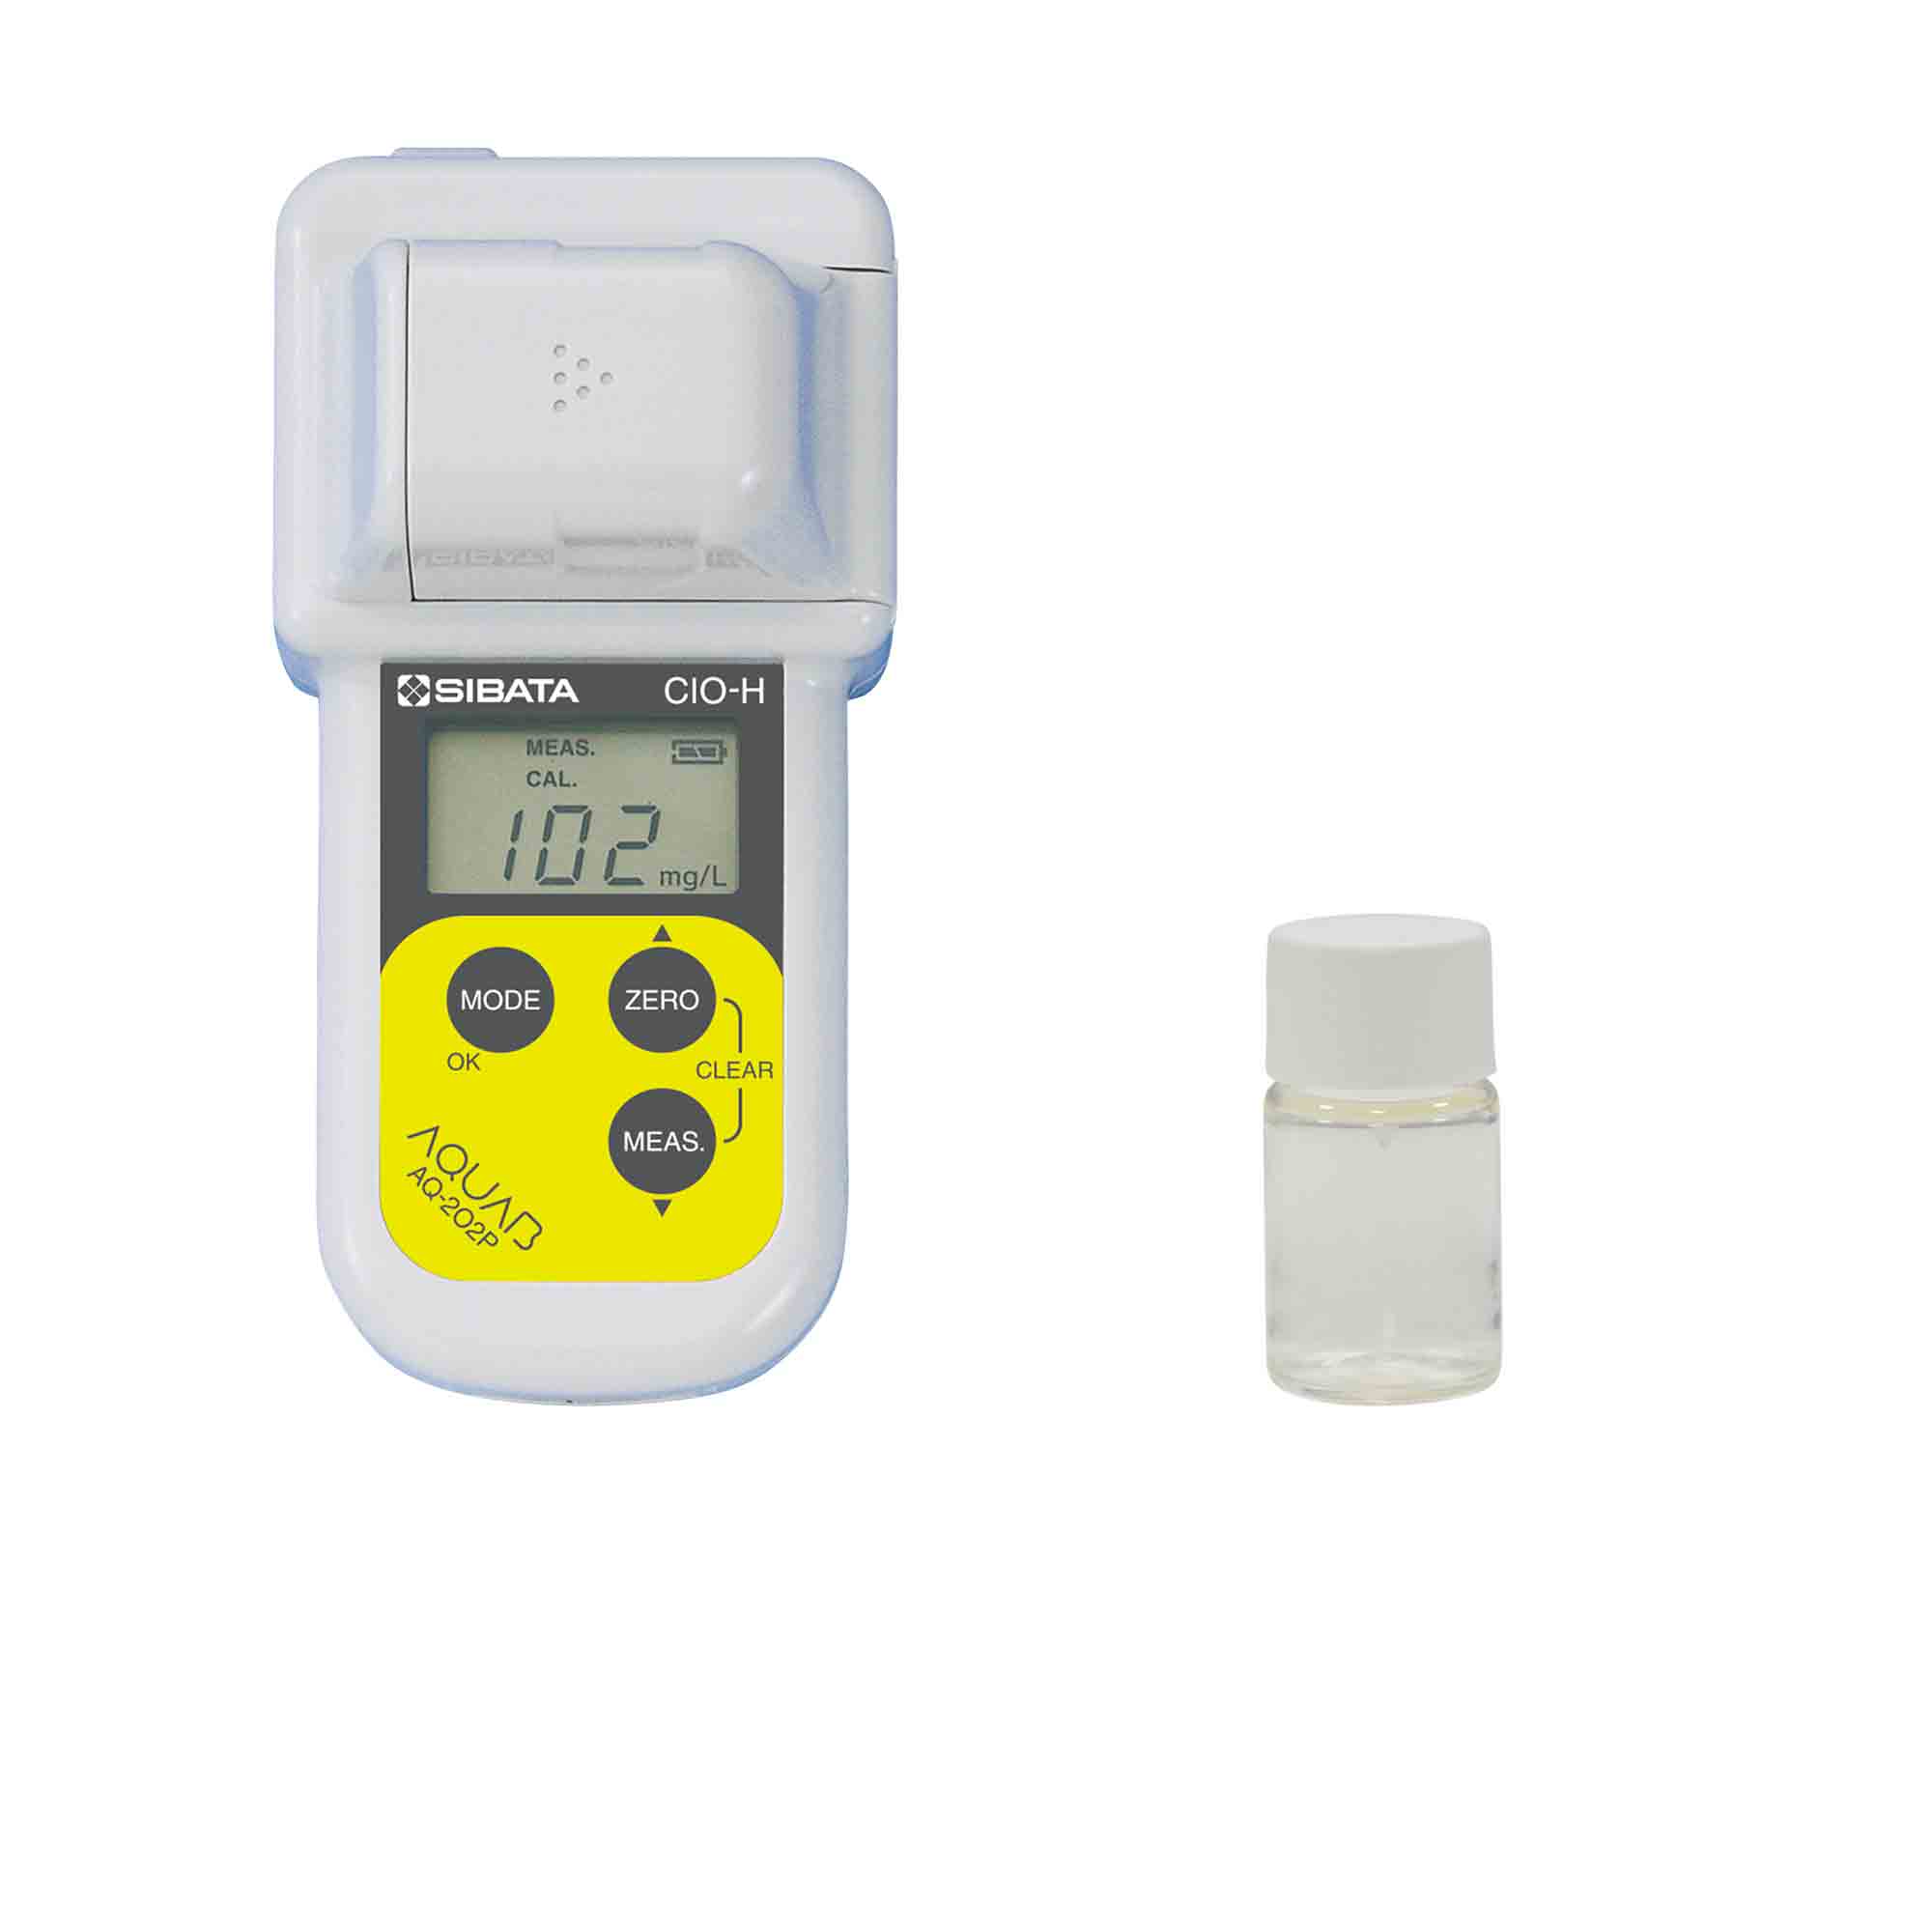 有効塩素濃度測定キット(食品衛生管理対策用) AQ-202P(PET製セル用)